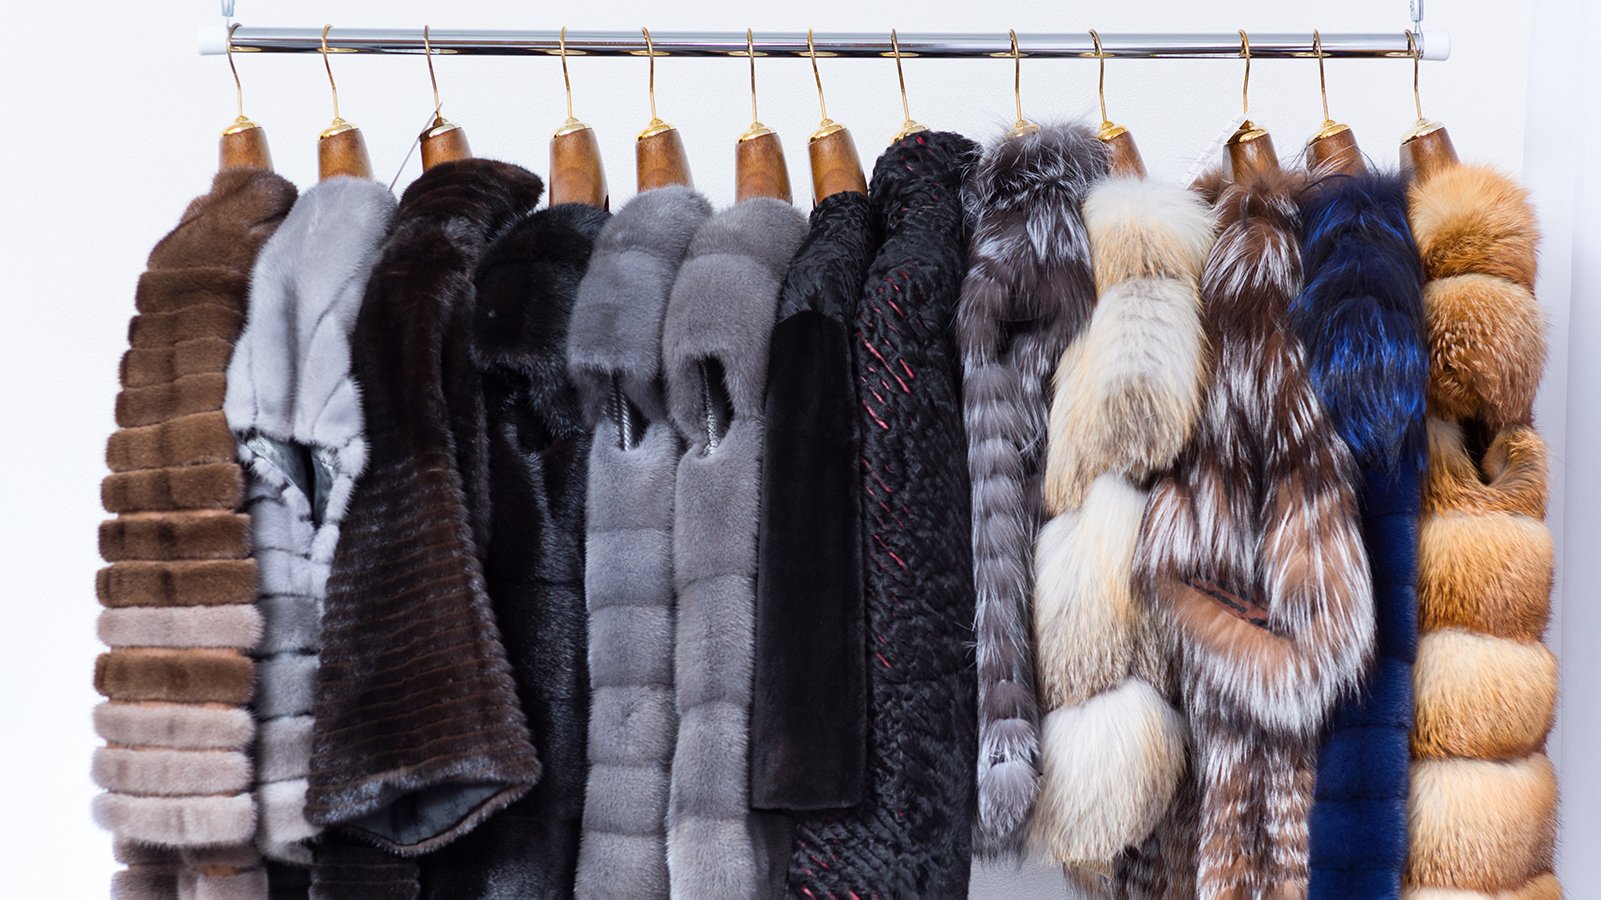 Alexander McQueen, Balenciaga and the Natural Fur